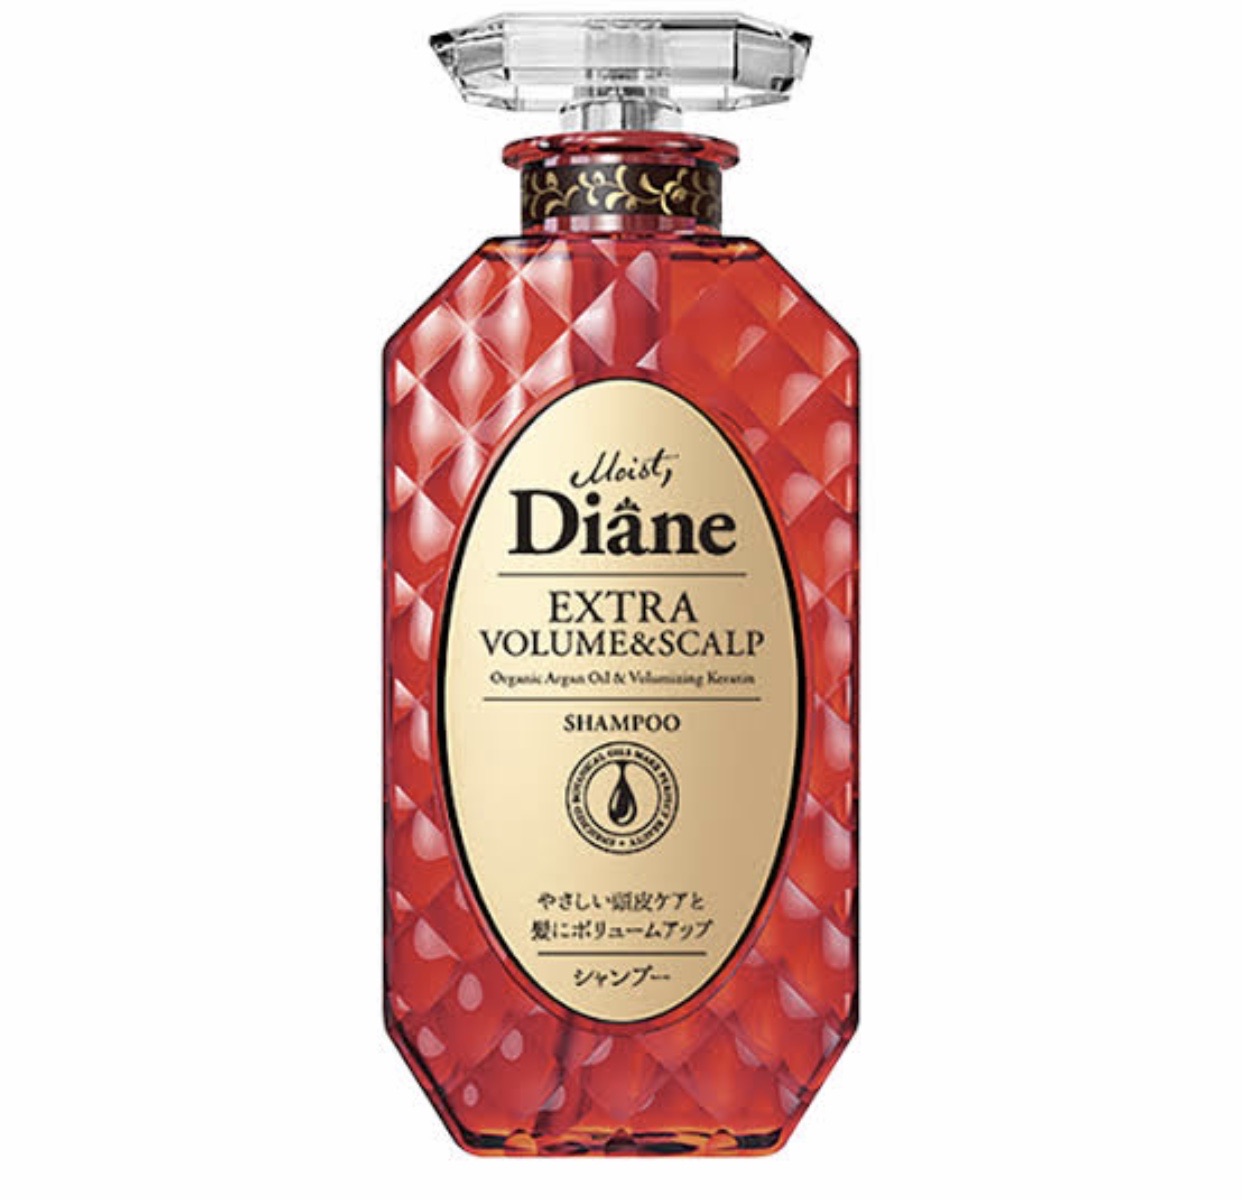 Moist Diane Extra Volume & Saclp Shampo